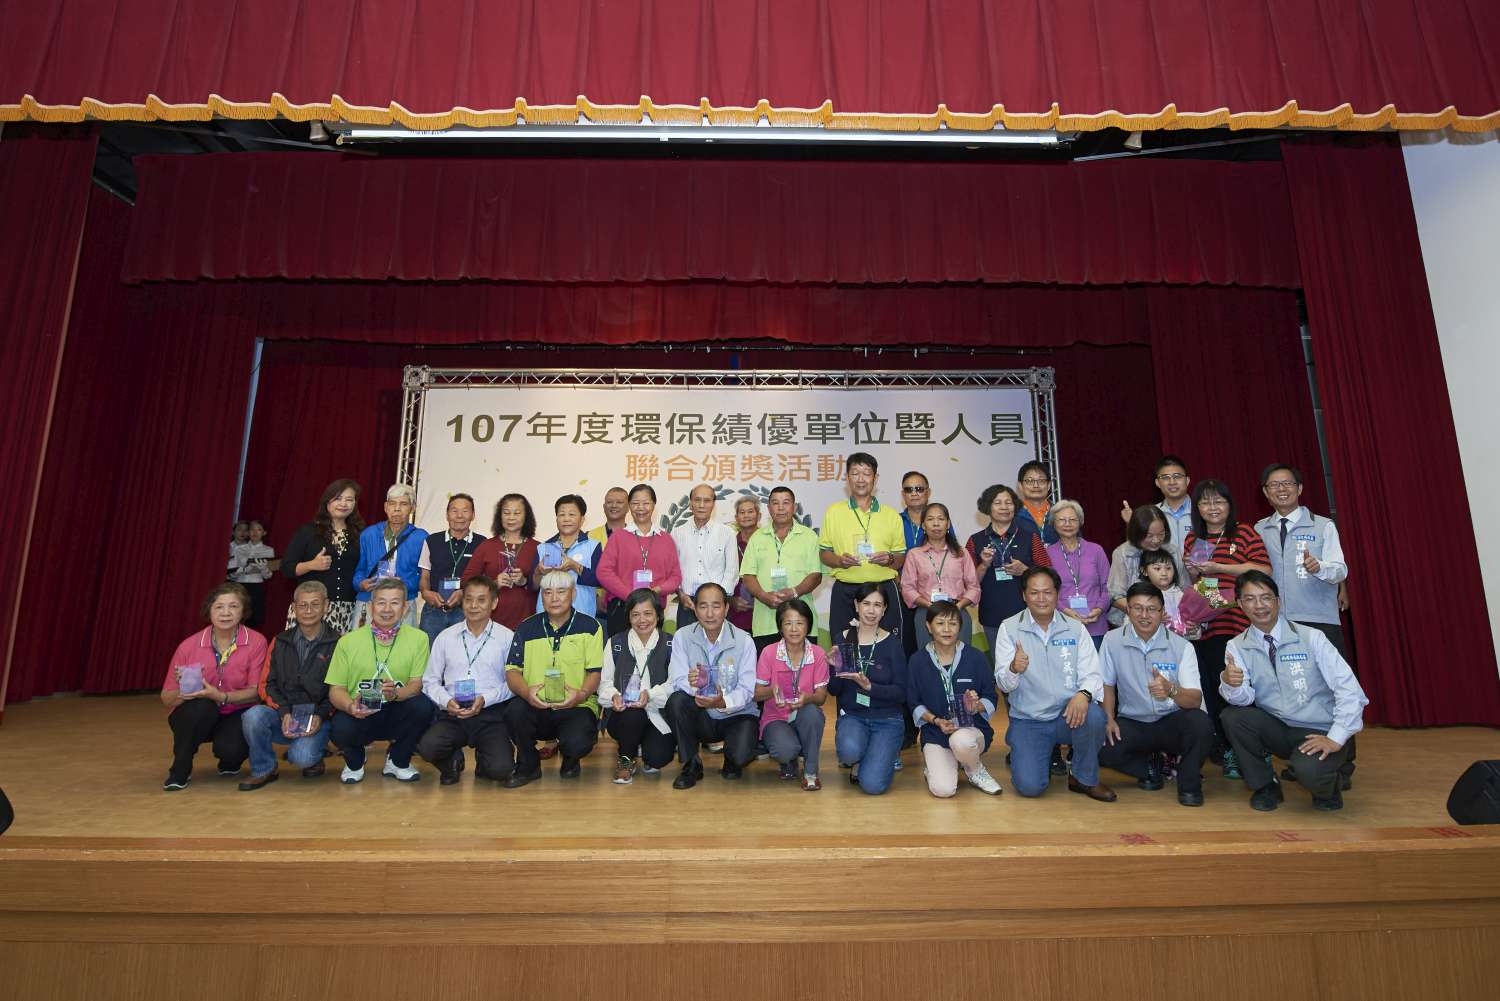 沈慧虹副市長頒發119個環保績優獎感恩共創環保佳績小圖共6張，pic2